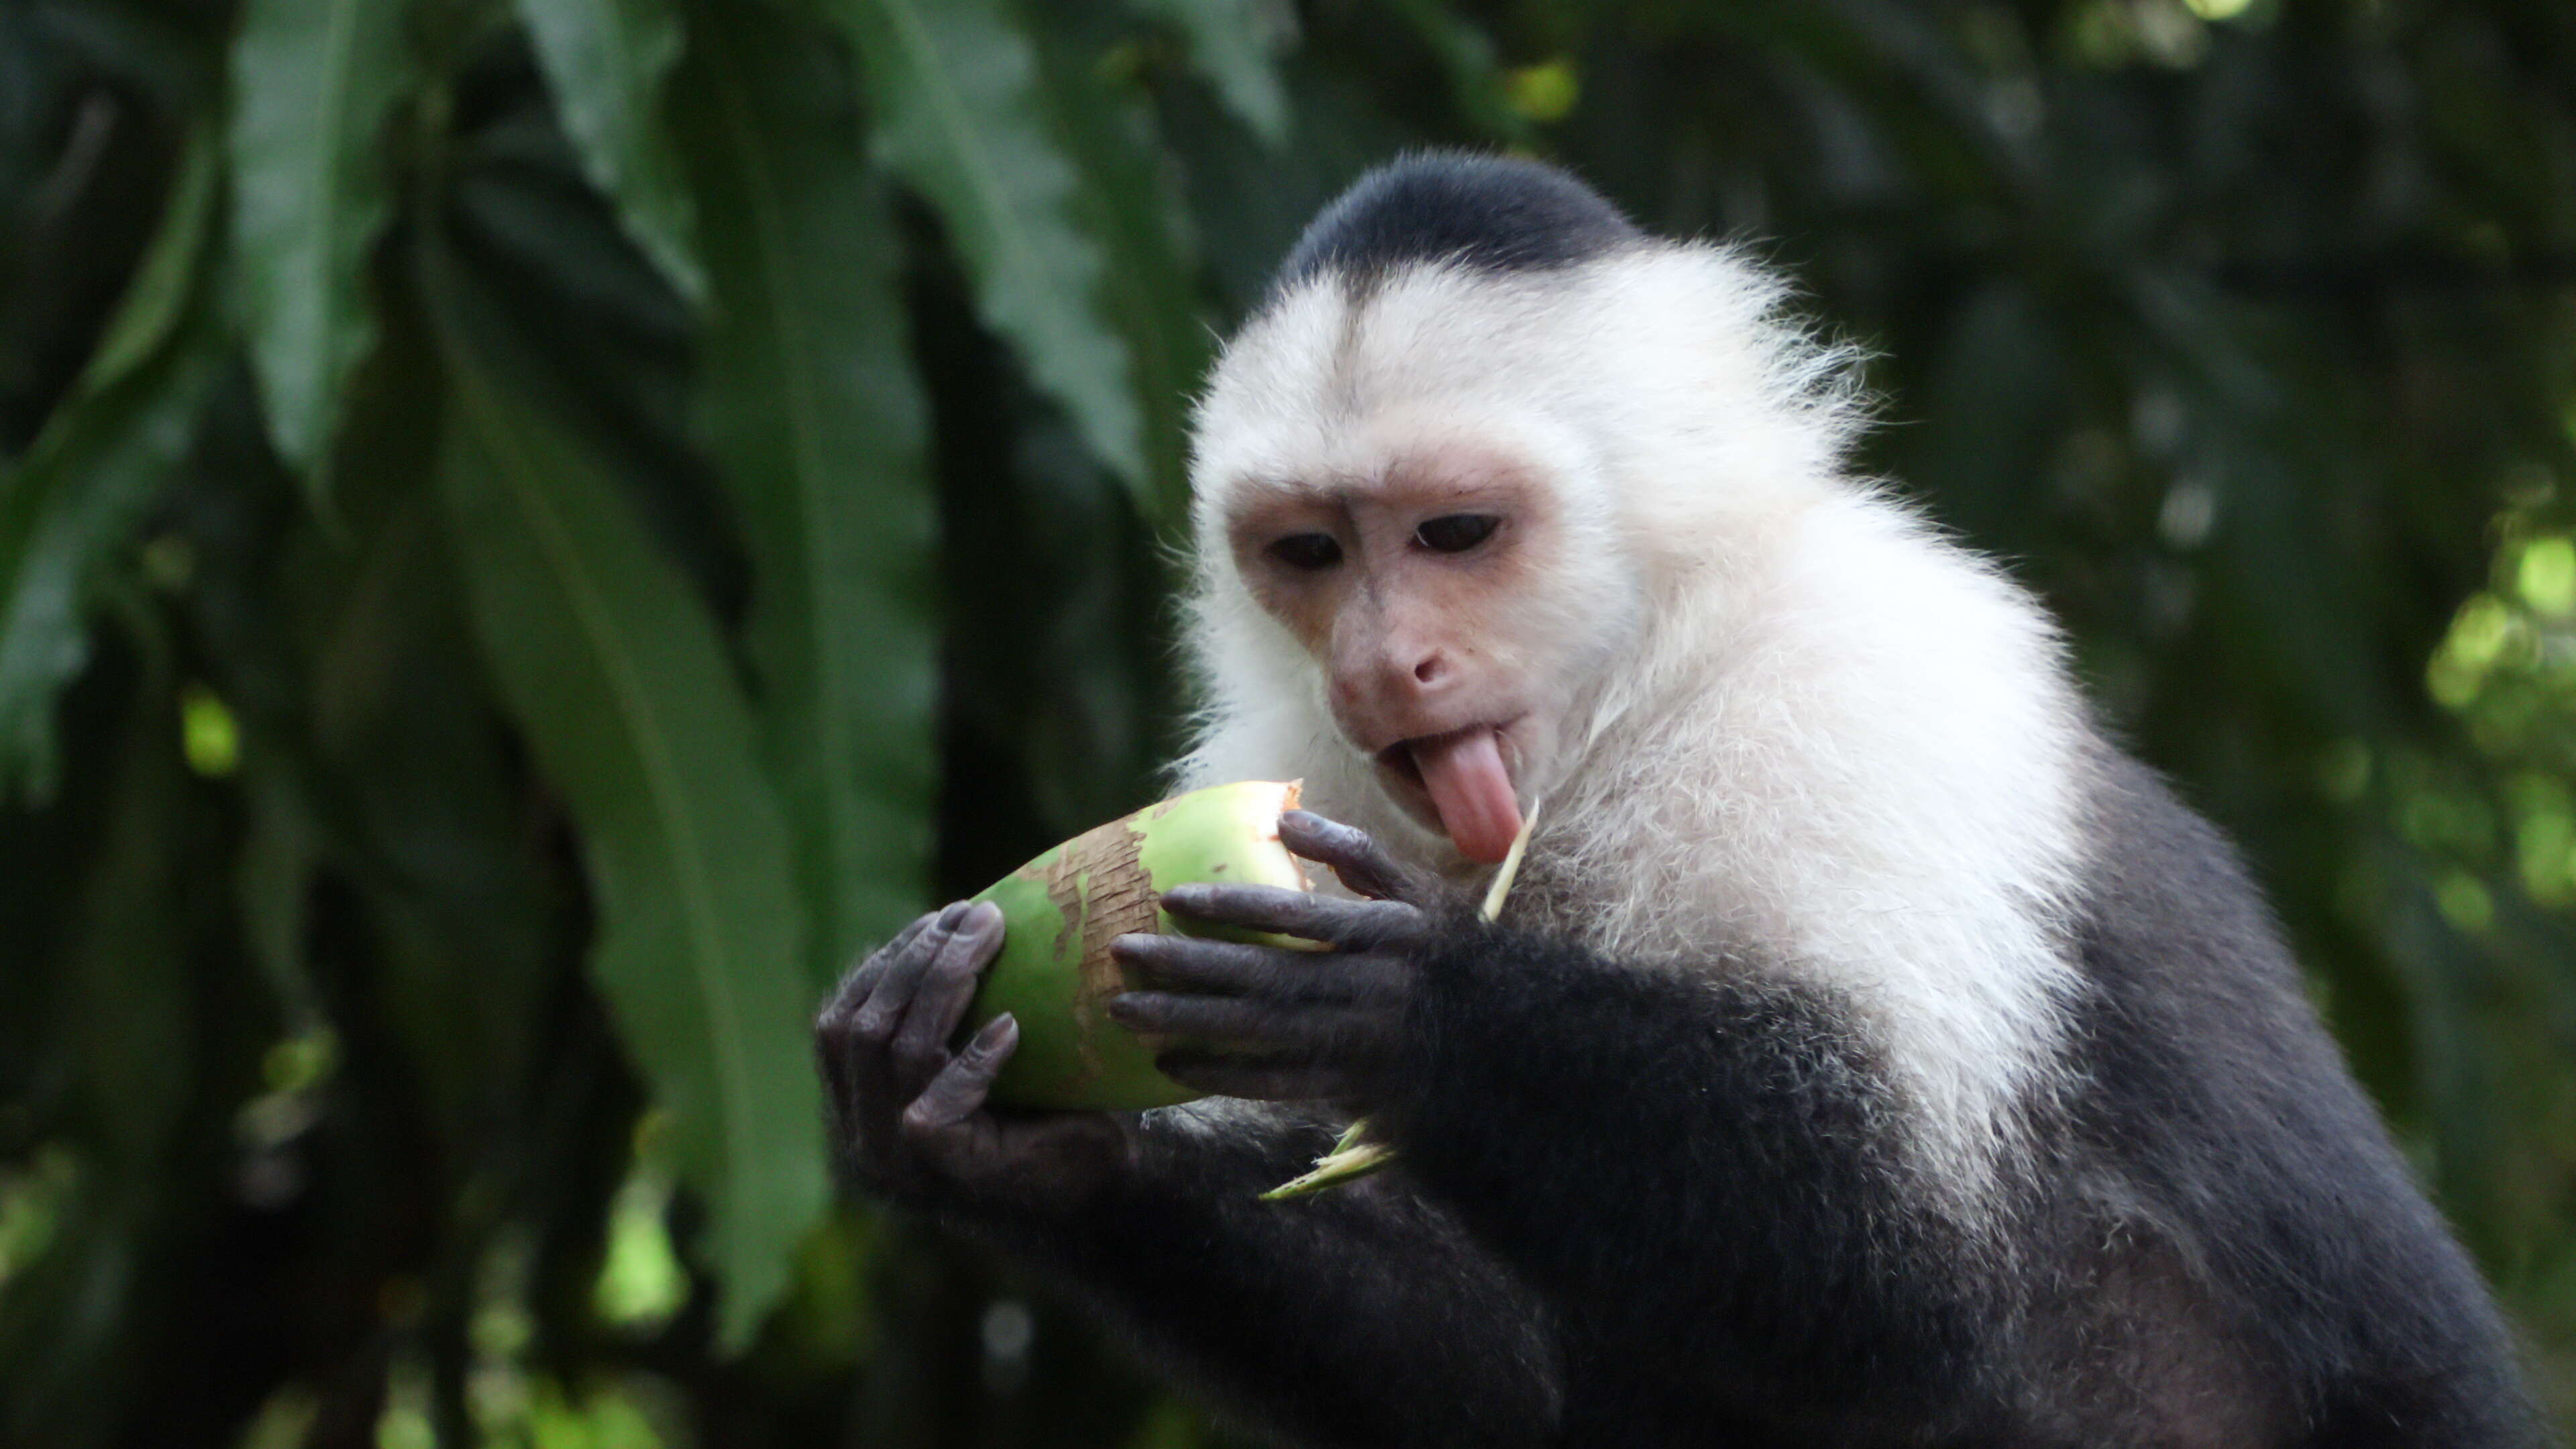 Image of Panama capuchin monkey